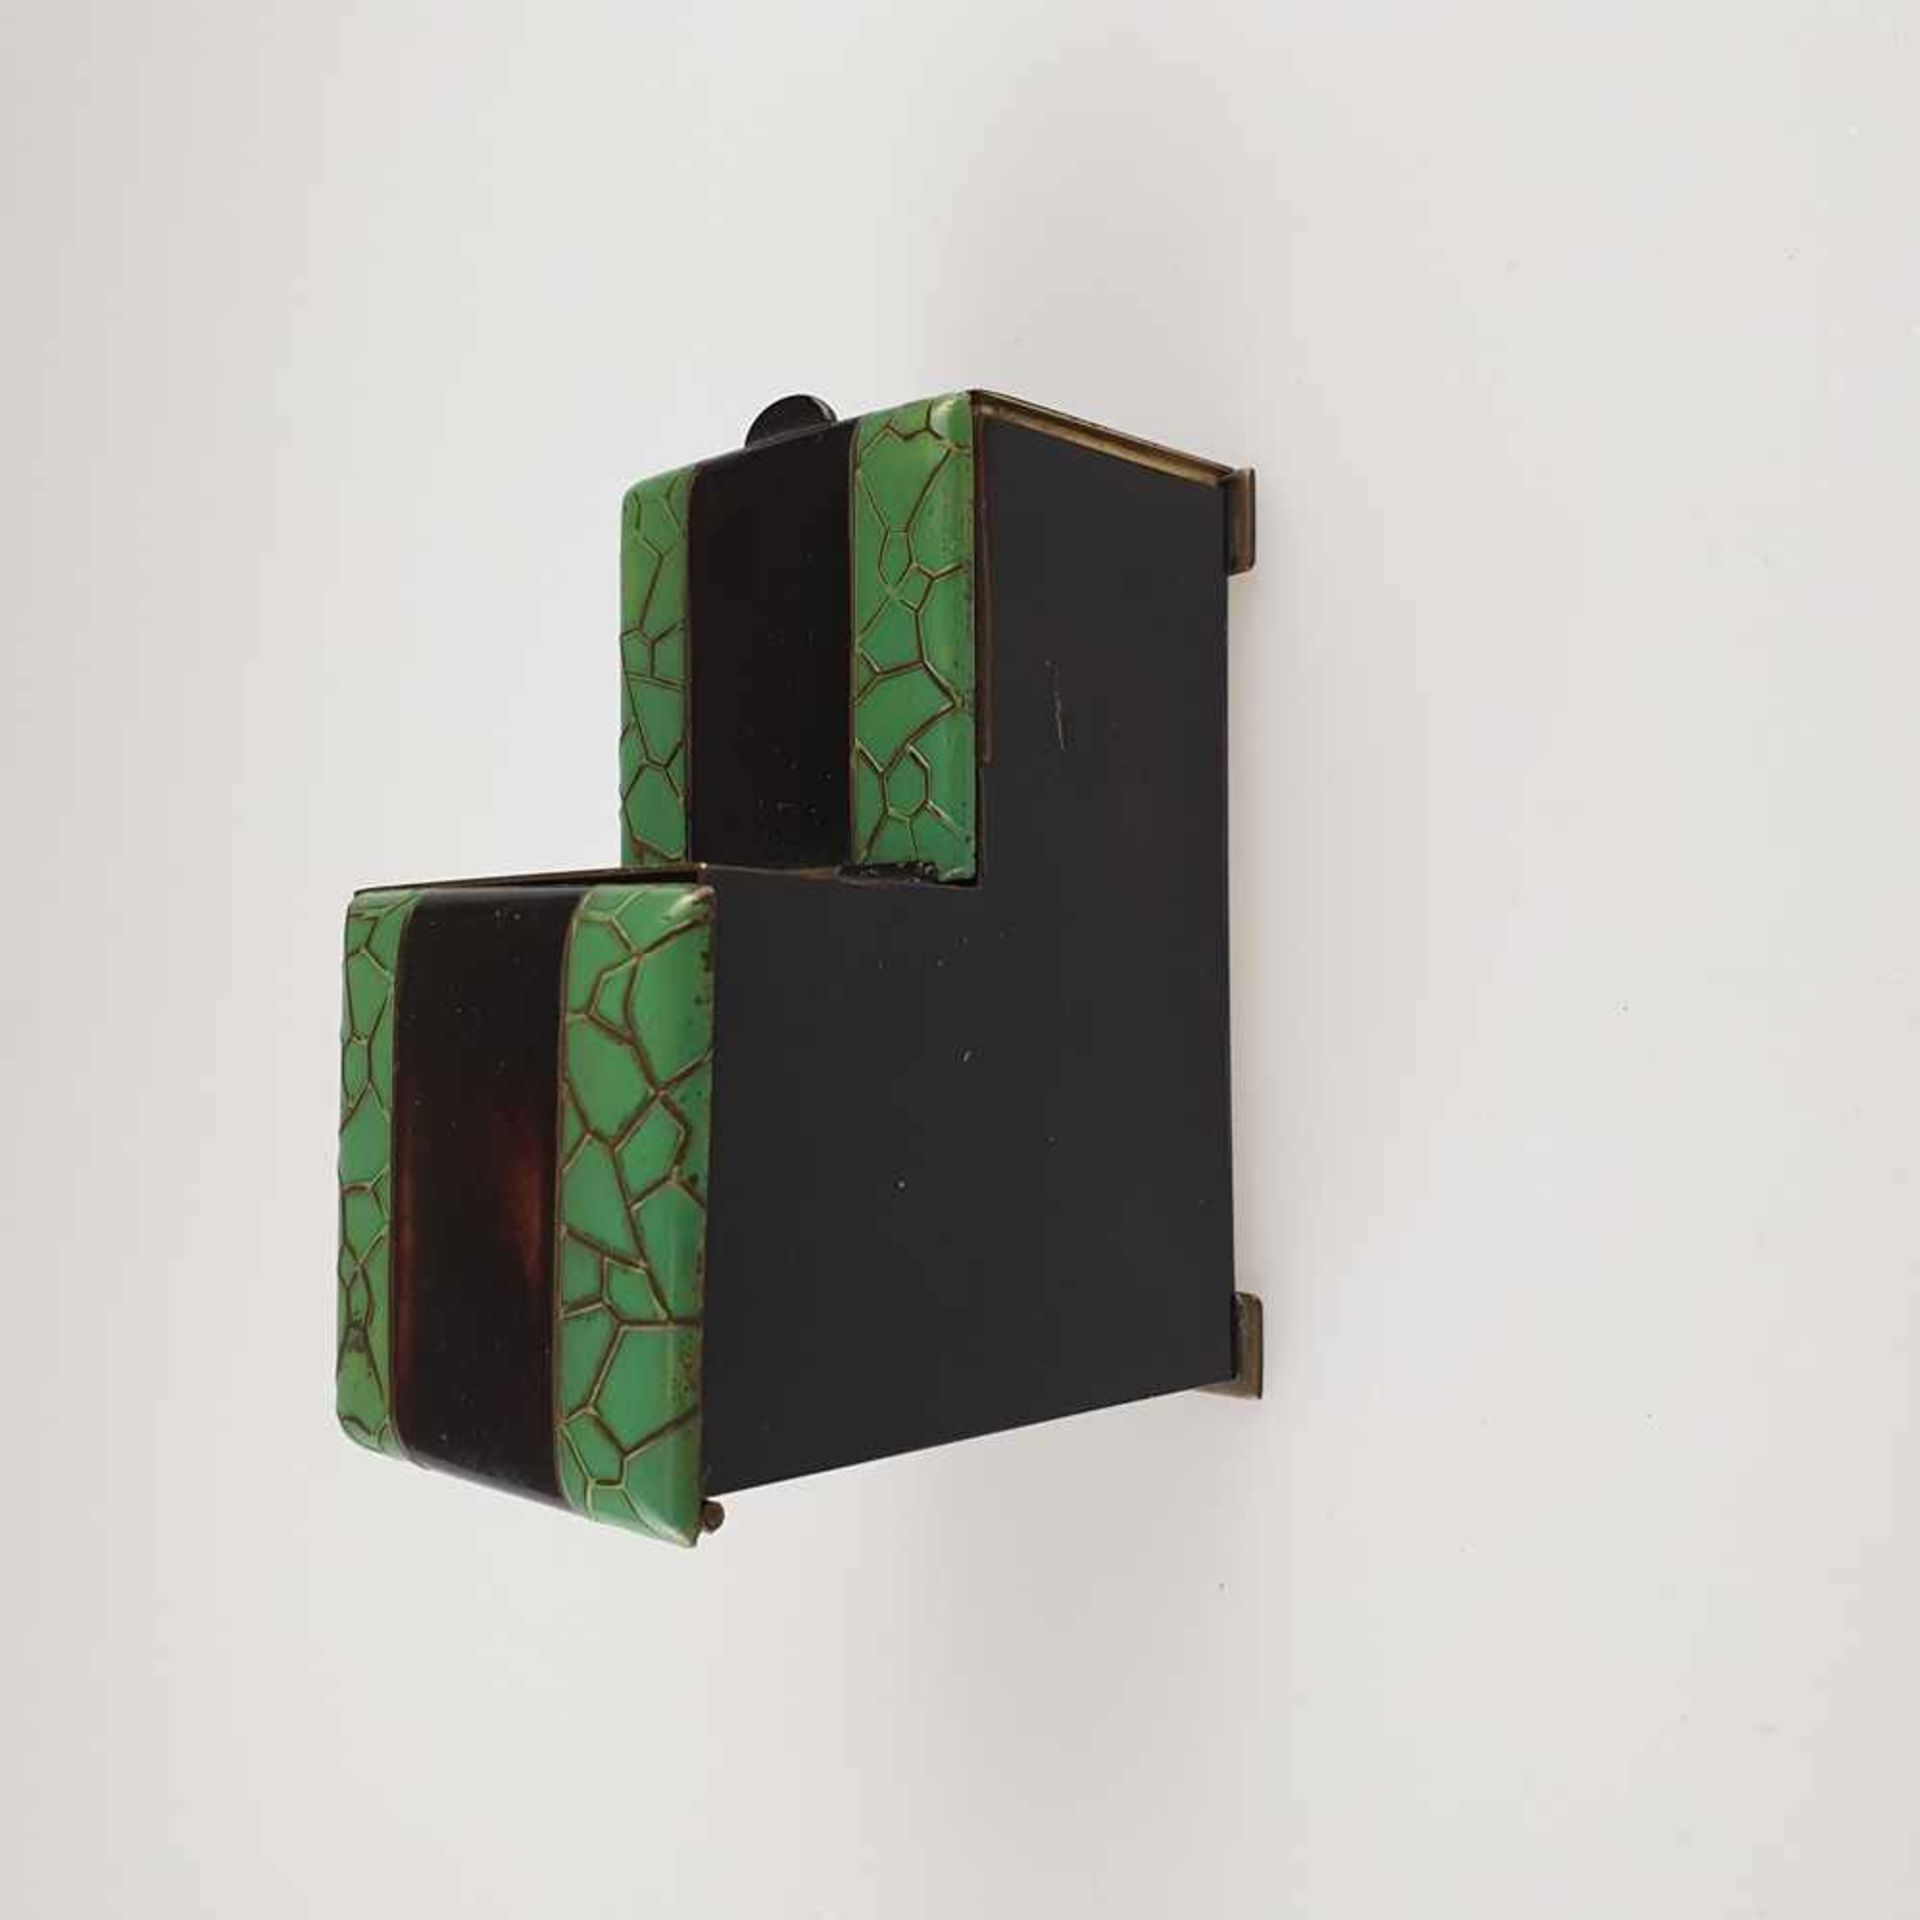 Raucher-Set - Blechgehäuse auf vier Plattfüßen, schwarz/grün lackiert, oben mit Glaseinsatz, unten - Bild 6 aus 9